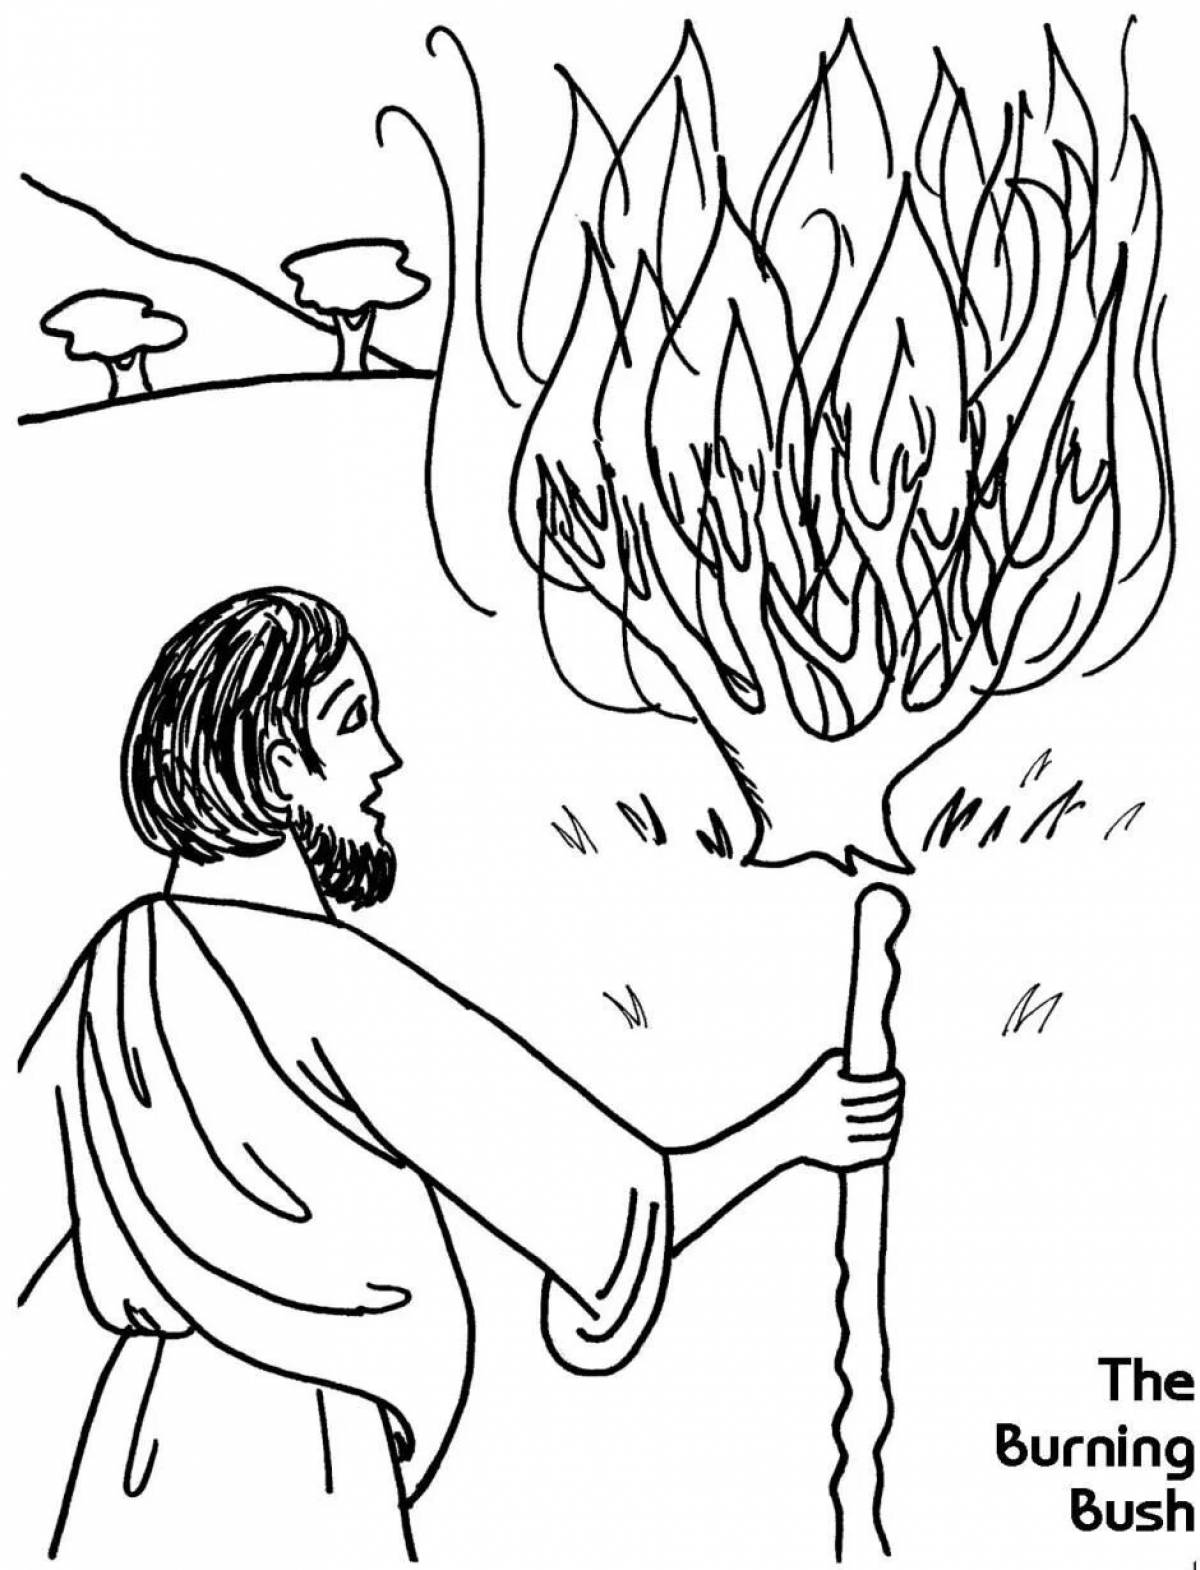 Drawing burning bush #5